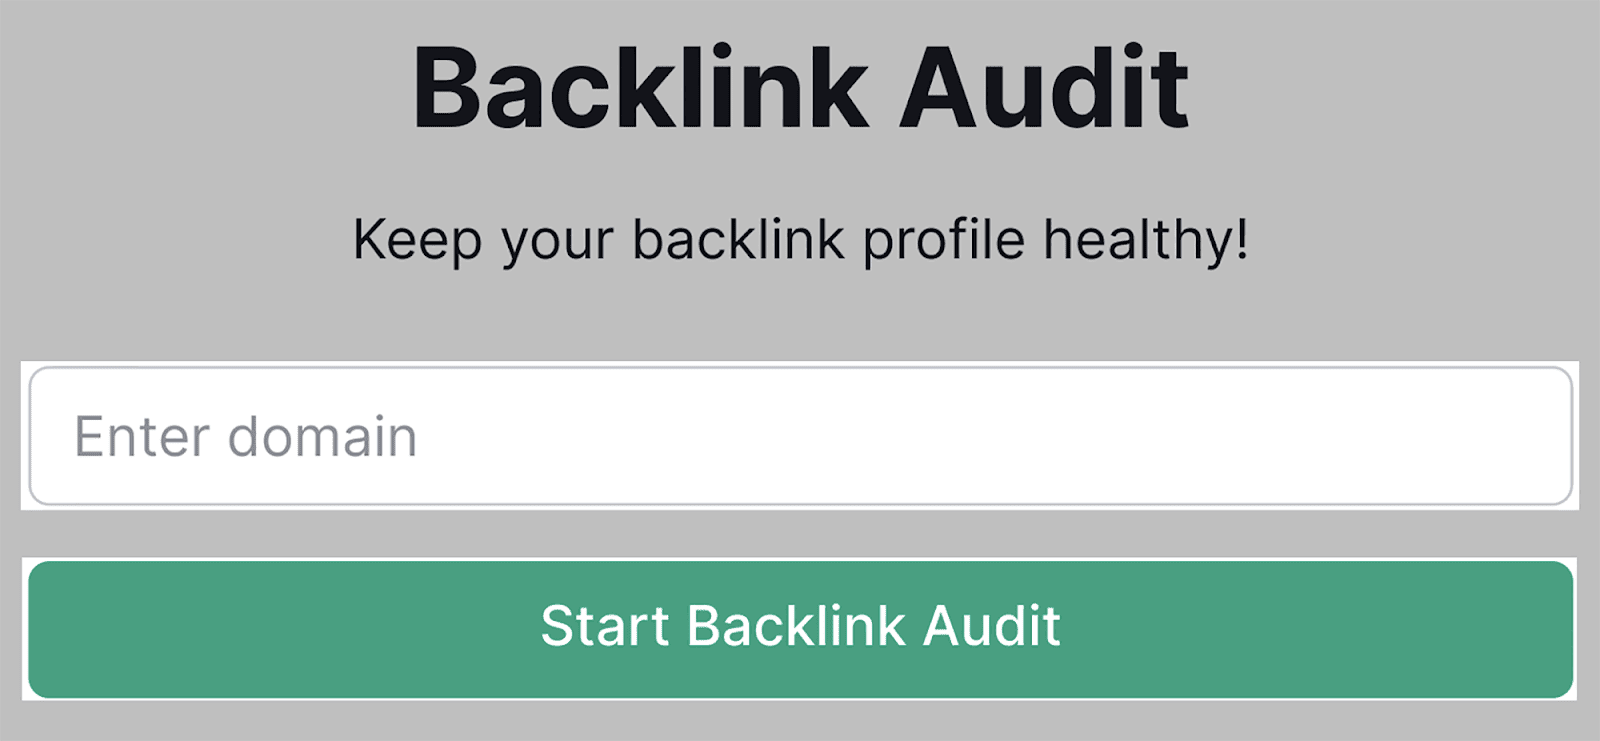 Enter your domain and click start backlink audit